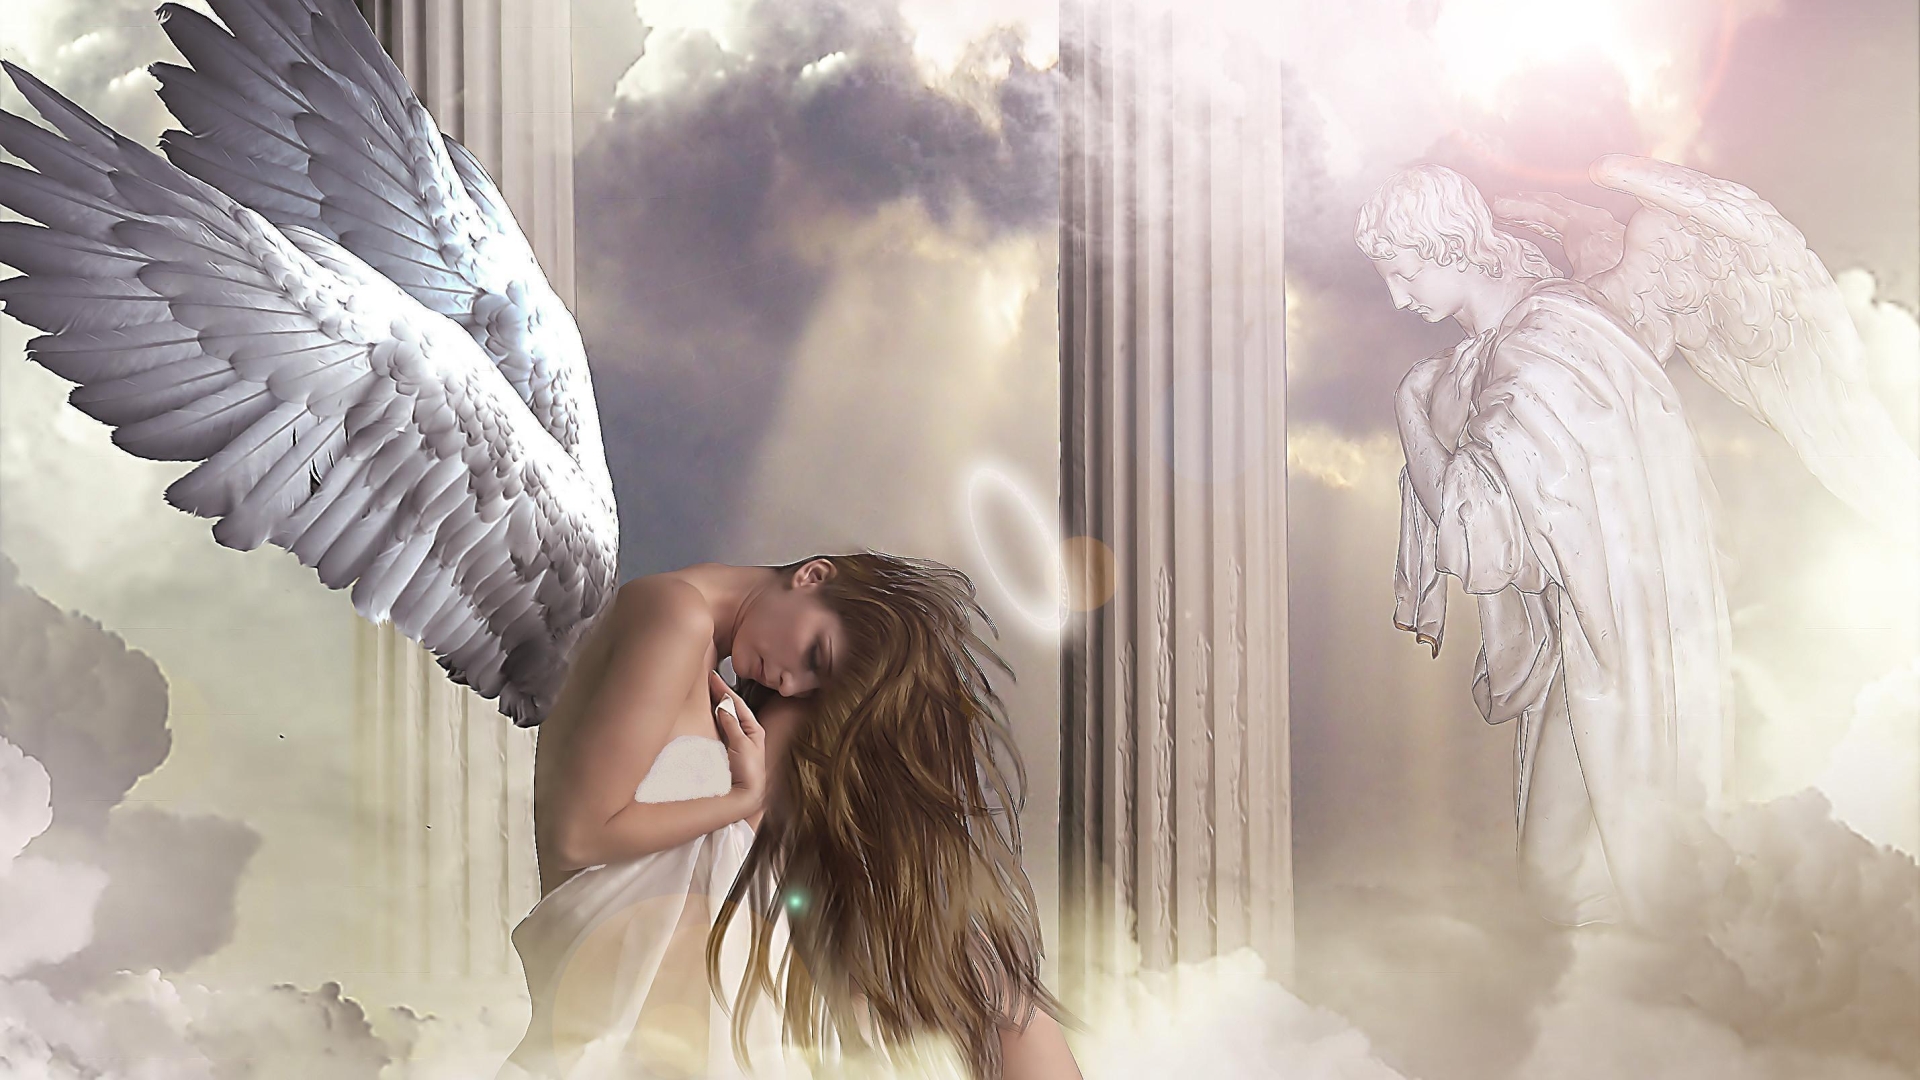 천사 바탕 화면,천사,날개,초자연적 생물,아름다움,소설 속의 인물